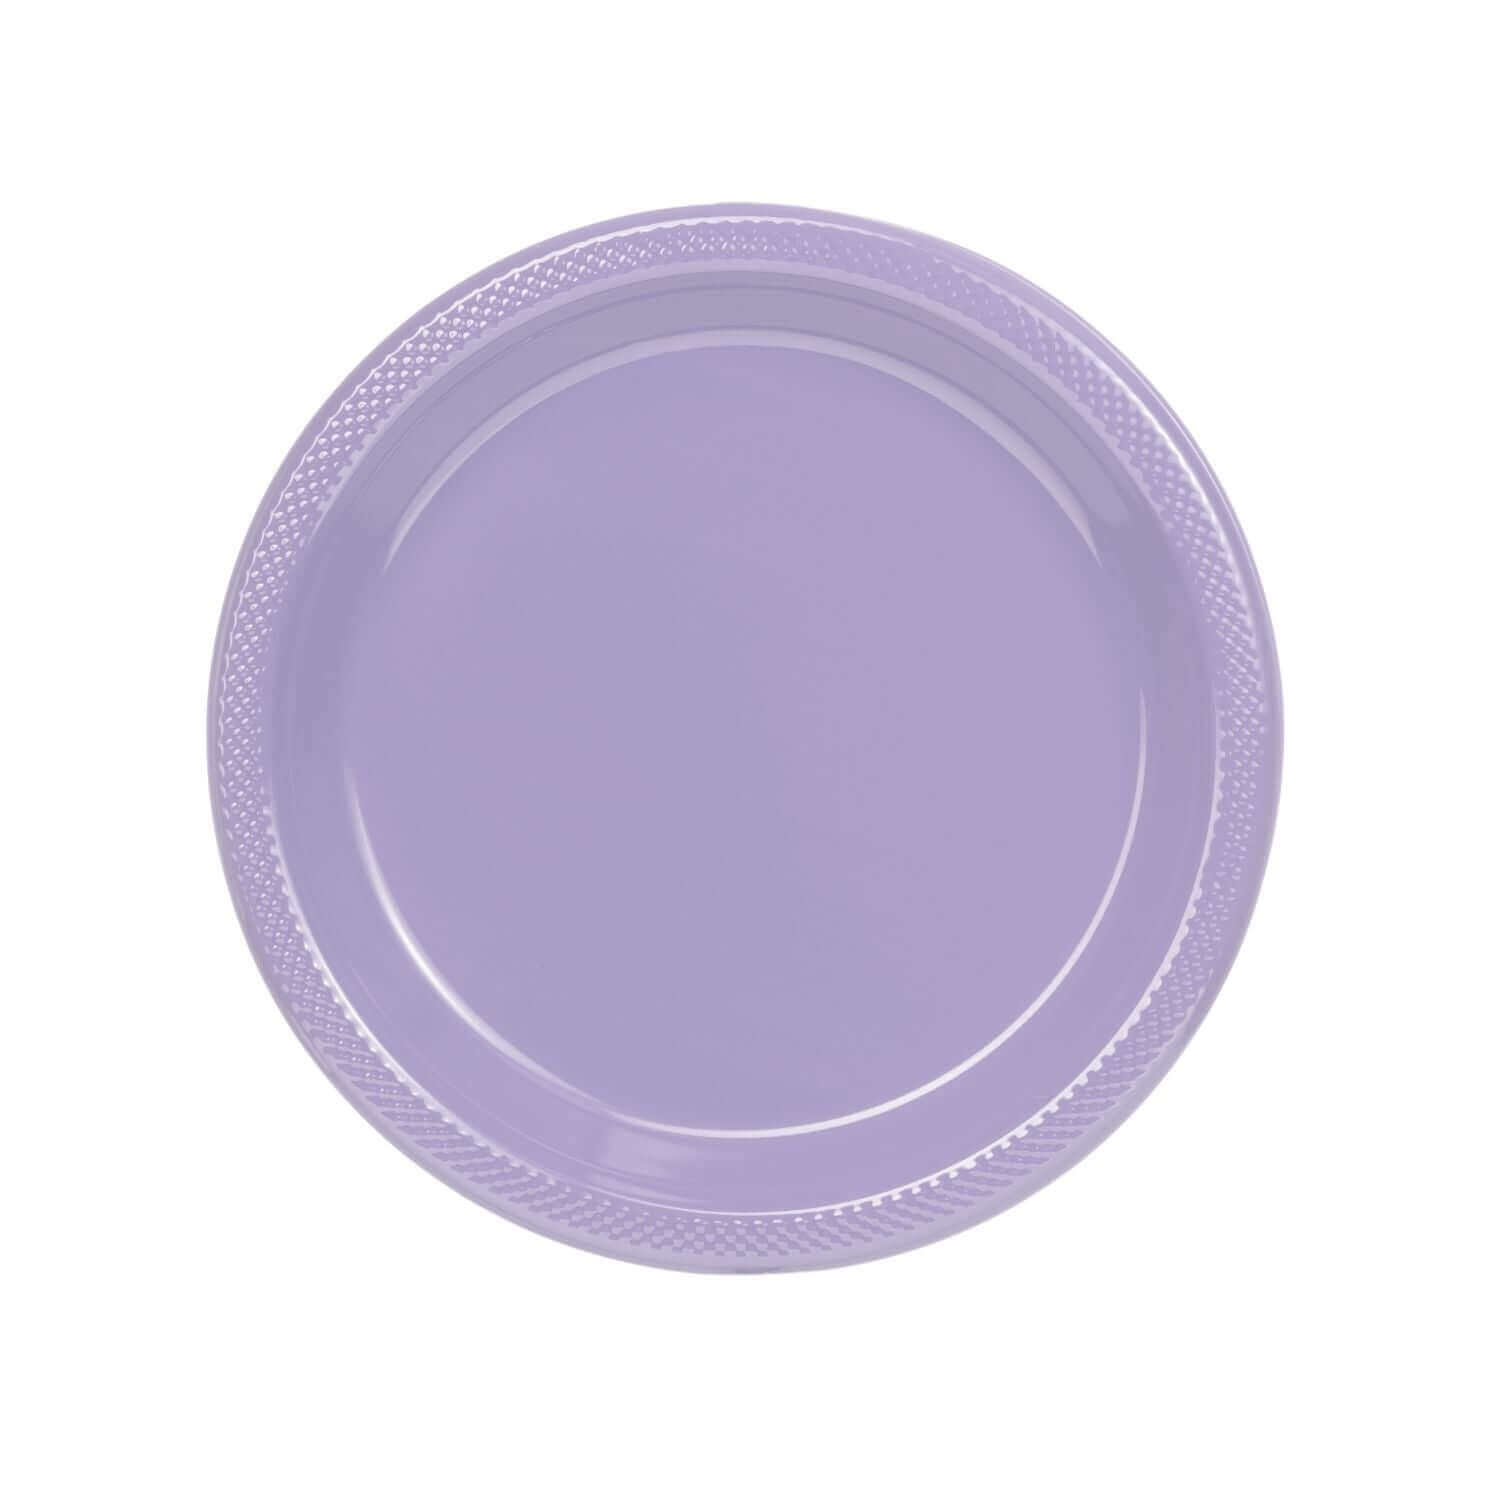 9" | Lavender Plastic Plates | 600 Count - Yom Tov Settings